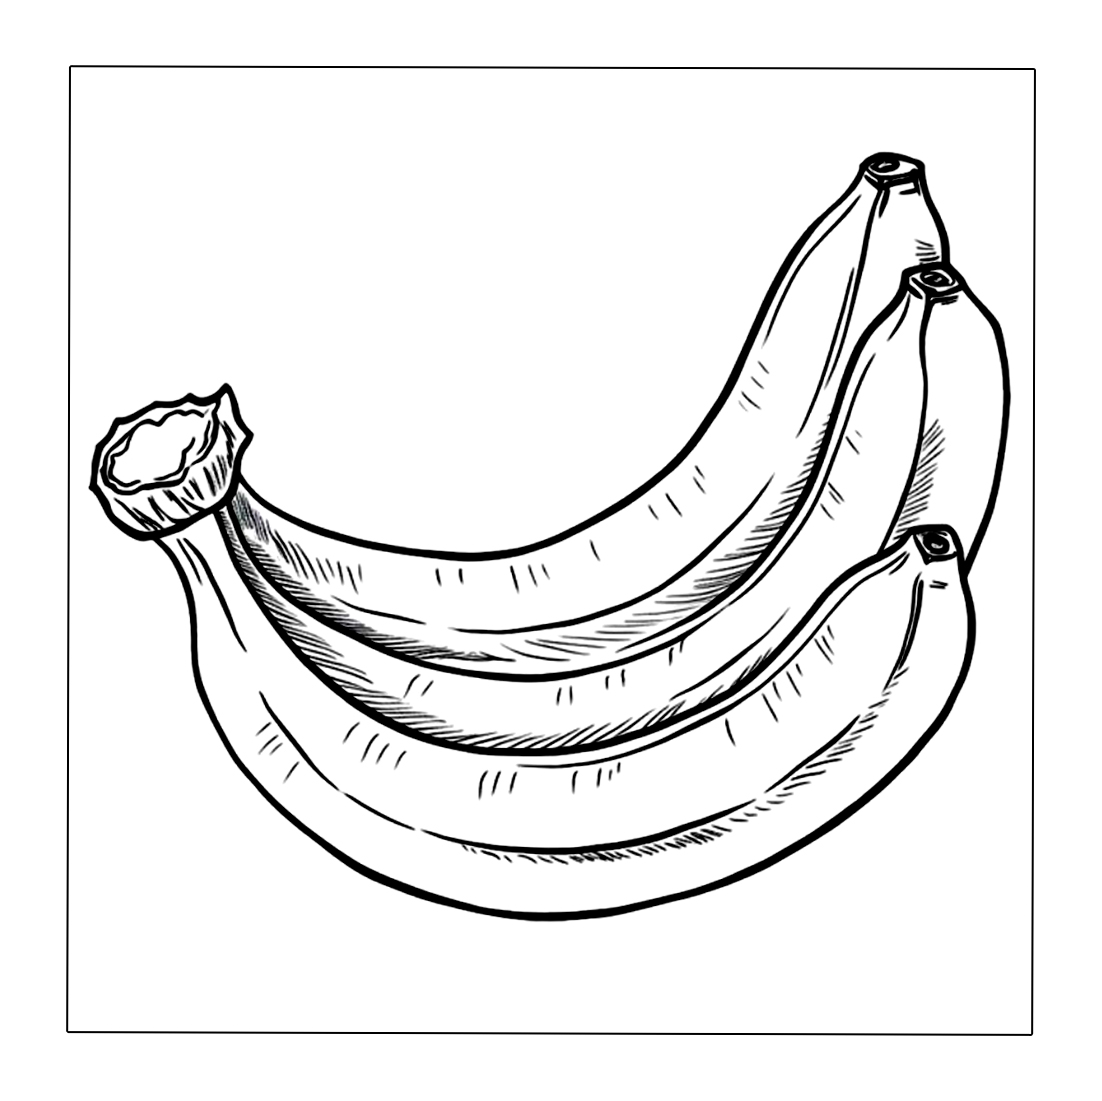 Drei Banane stehen nebeneinander